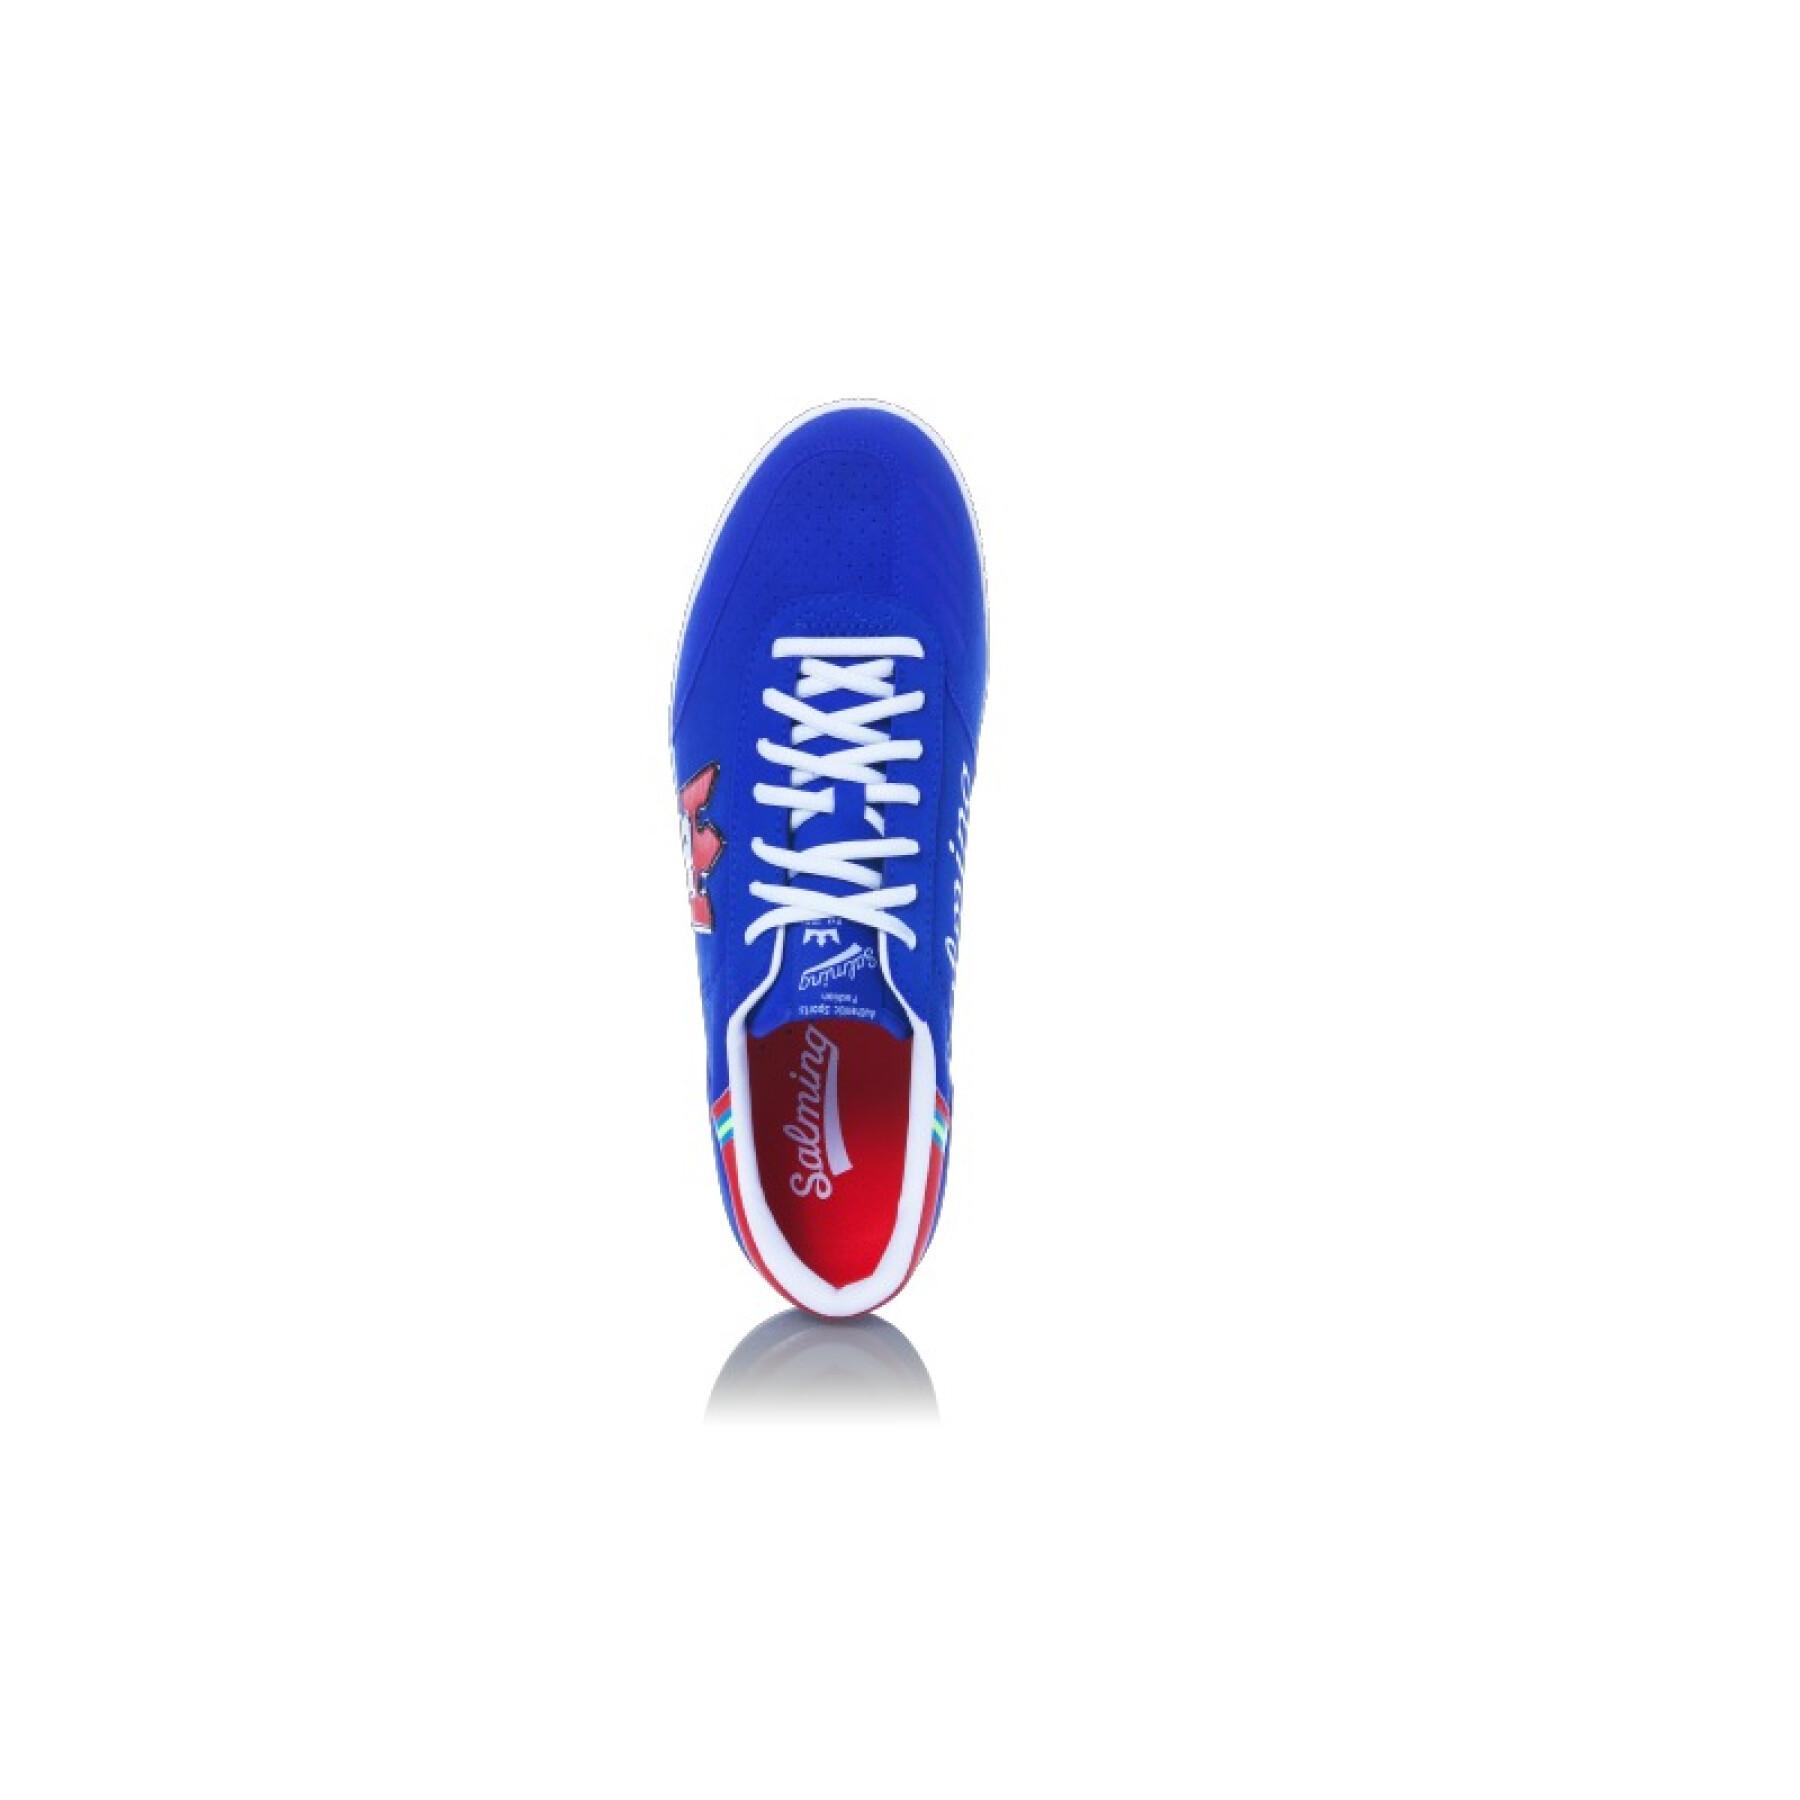 Zapatos Salming 91 Goalie bleu/rouge